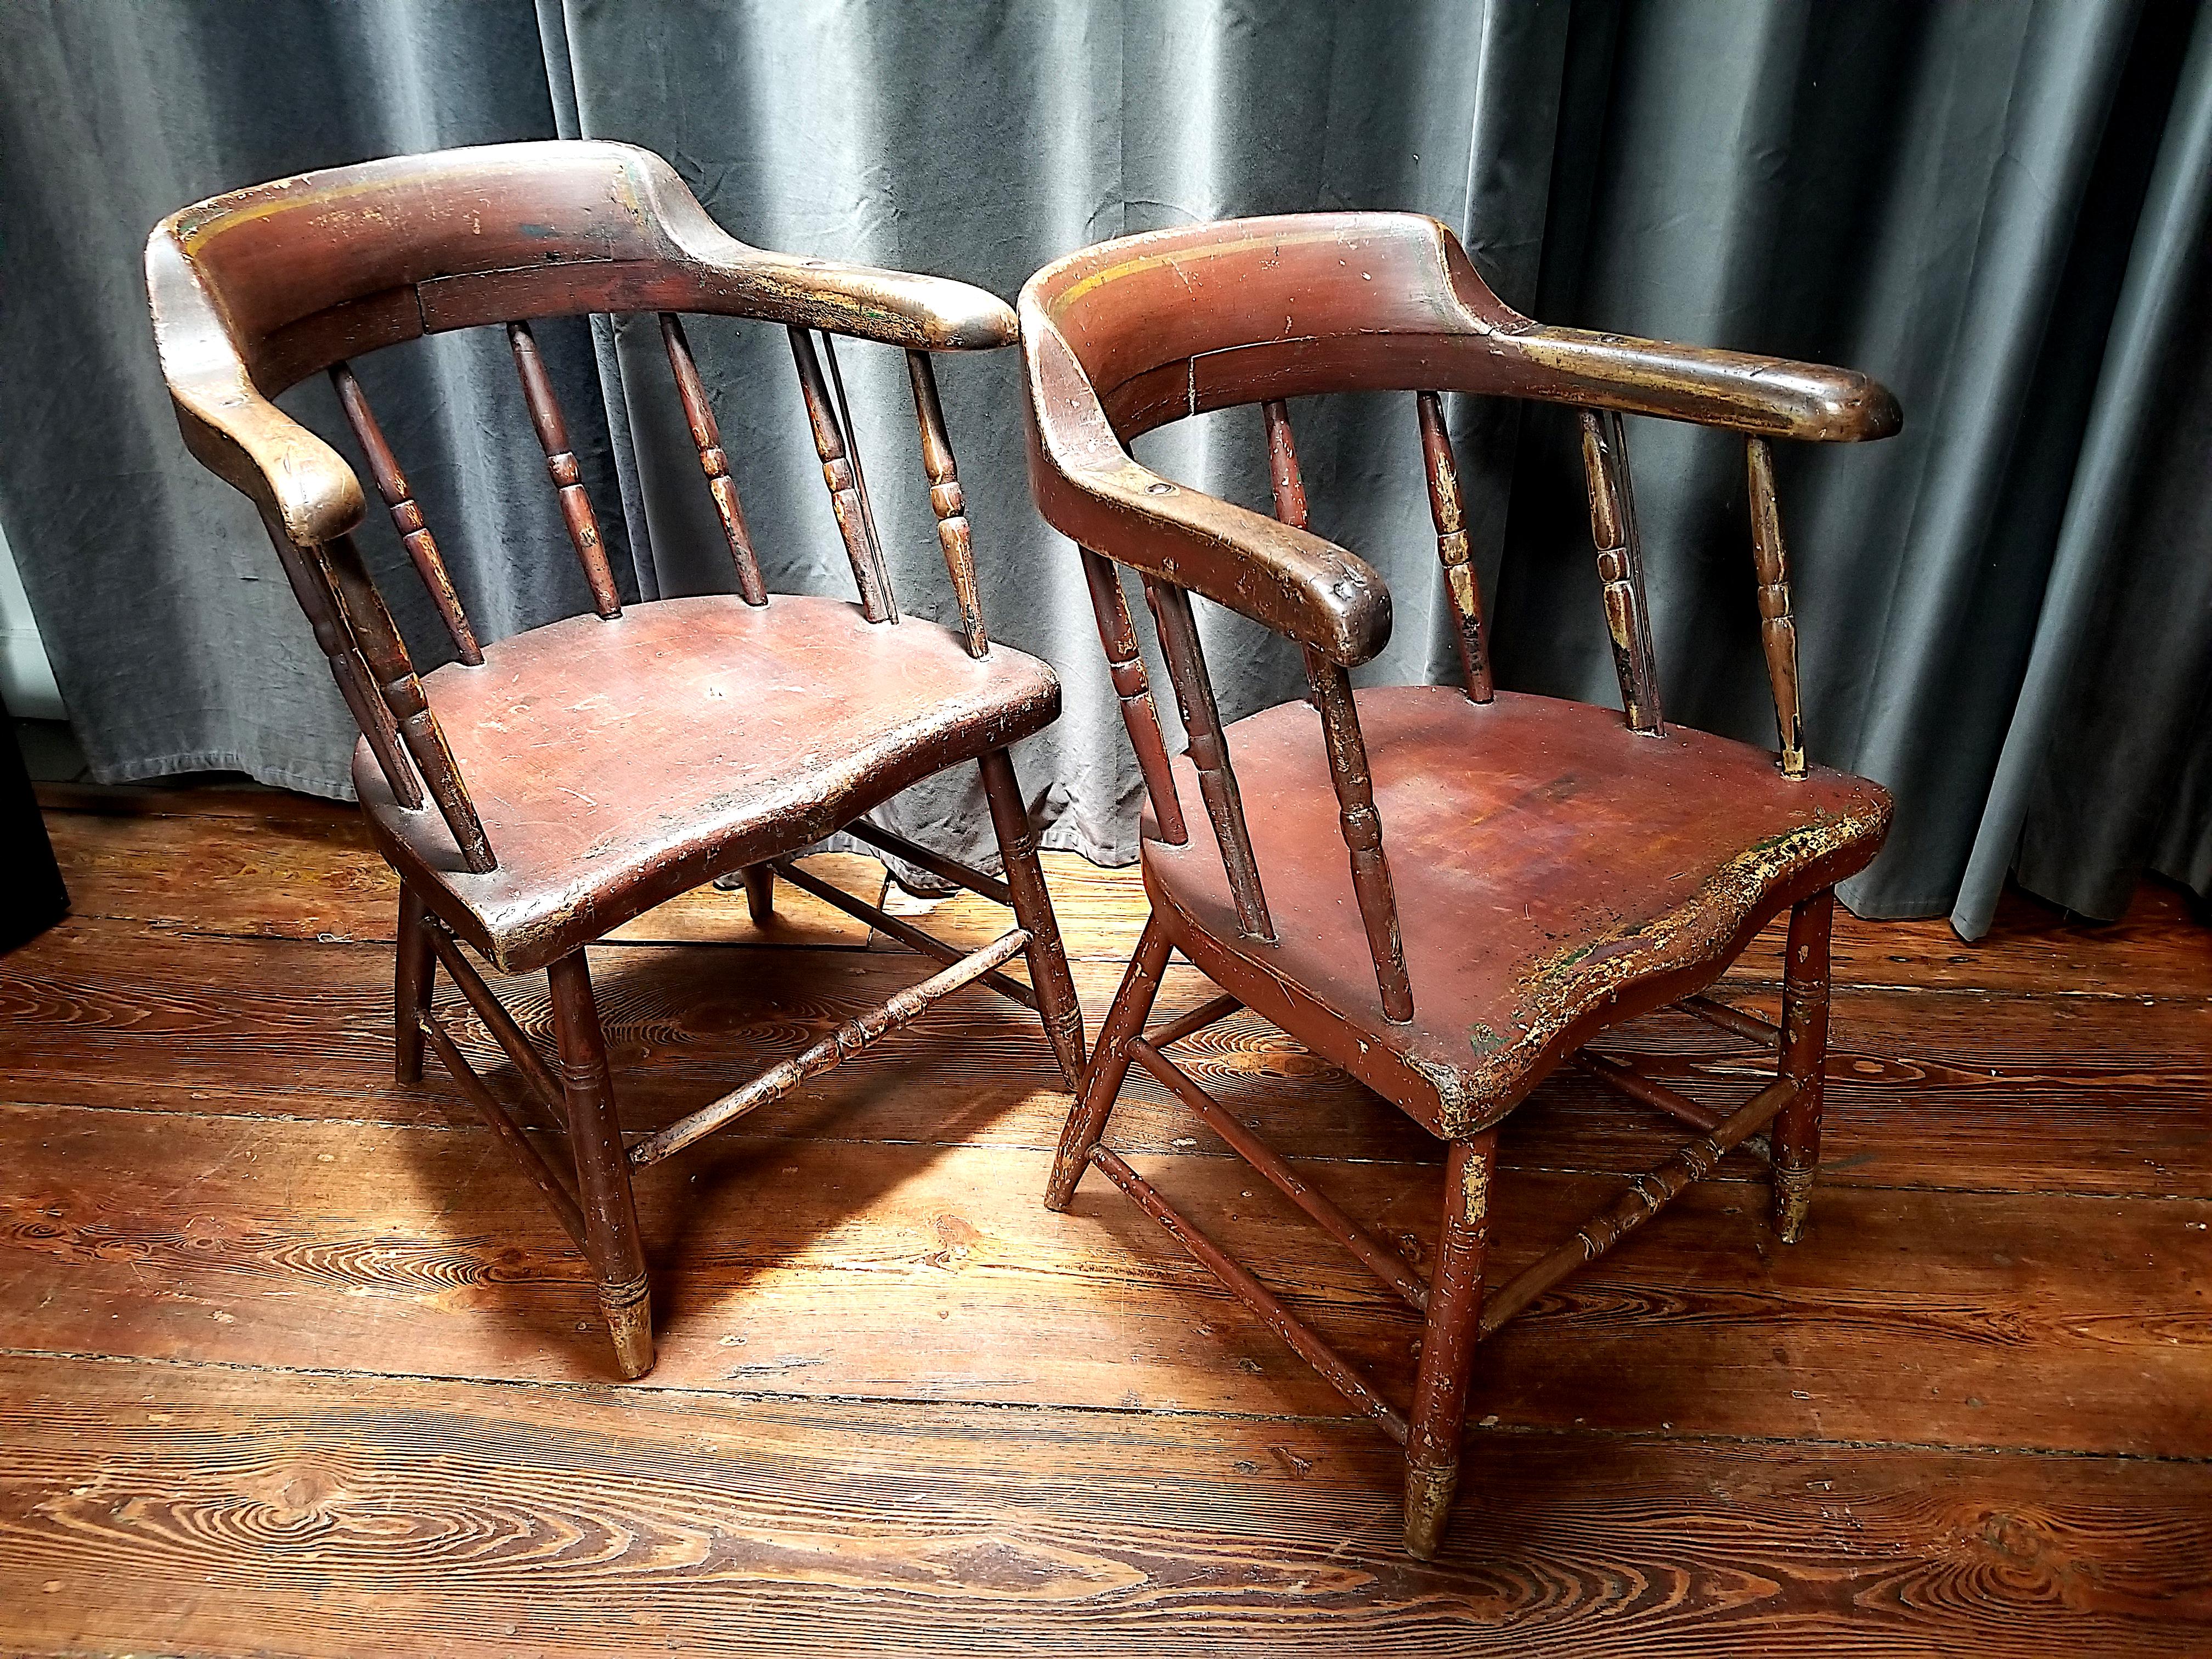 Belle et confortable paire de chaises Windsor de style caserne de pompiers ou capitaine. 
Conserve les croisillons en fer d'origine, la surface peinte et la riche et chaude patine d'usure. 
Nouvelle Angleterre, les chaises construites vers 1820 avec